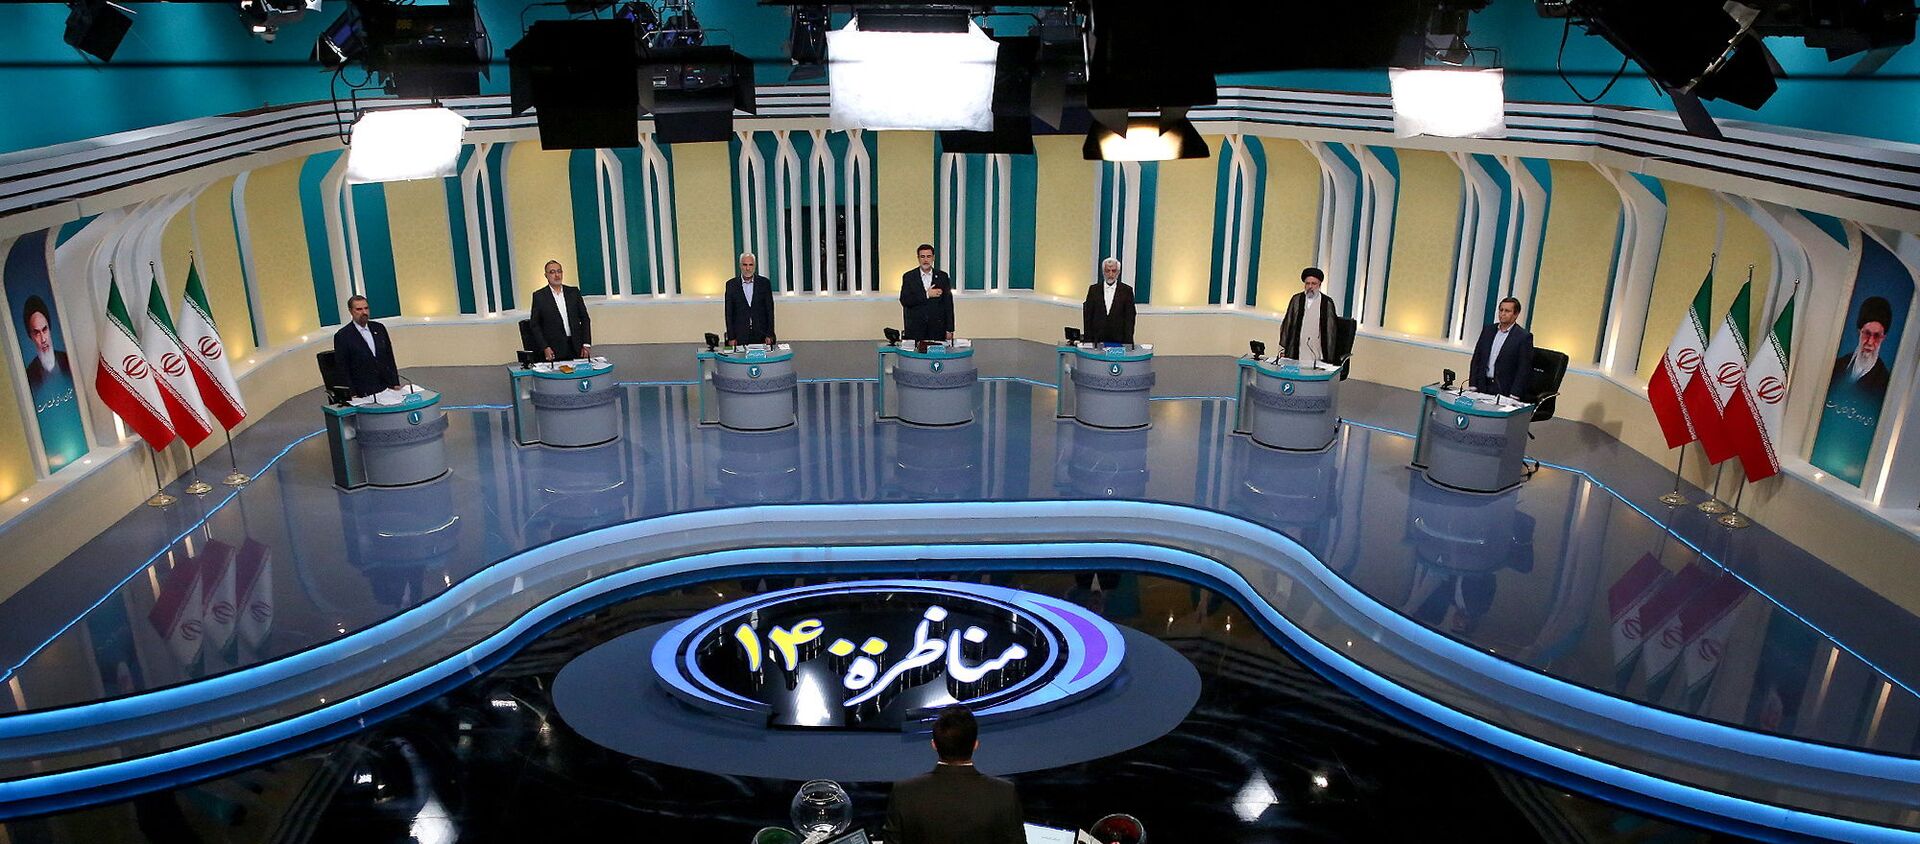 منظر عام للمناظرة الانتخابية في استوديو تلفزيوني، في طهران، إيران ، 8 يونيو/ حزيران 2021 - سبوتنيك عربي, 1920, 13.06.2021